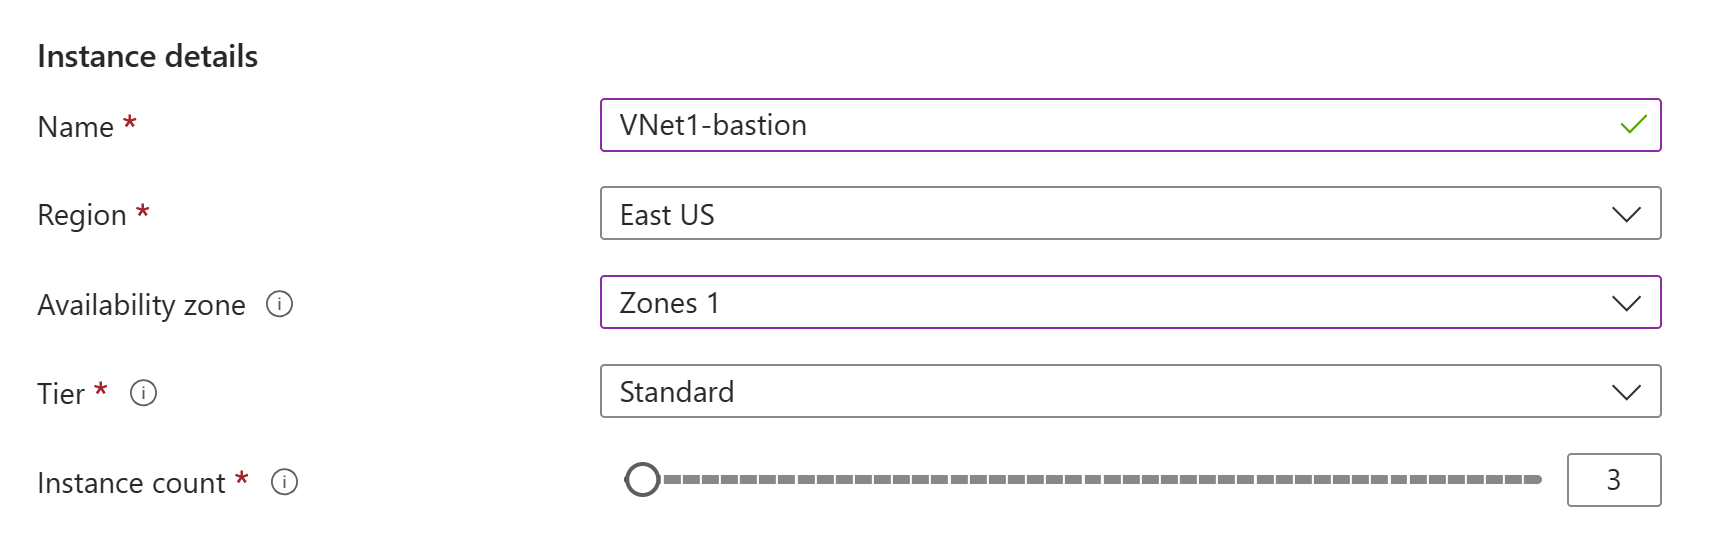 Bastion sayfa örneği değerlerinin ekran görüntüsü.